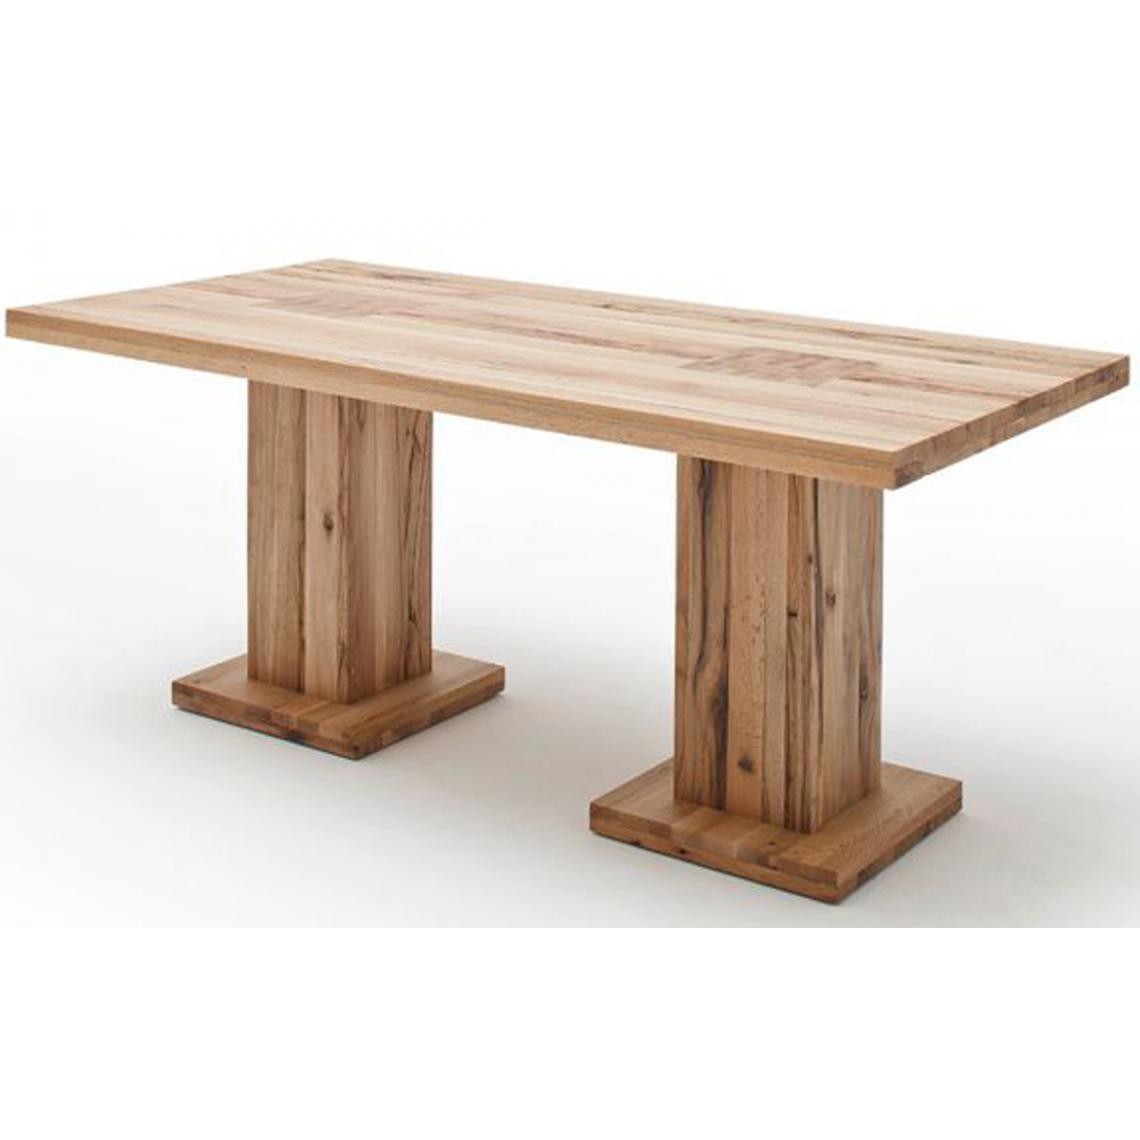 Pegane - Table à manger en chêne sauvage laqué mat, avec 2 colonnes - L.260 x H.76 x P.100 cm -PEGANE- - Tables à manger